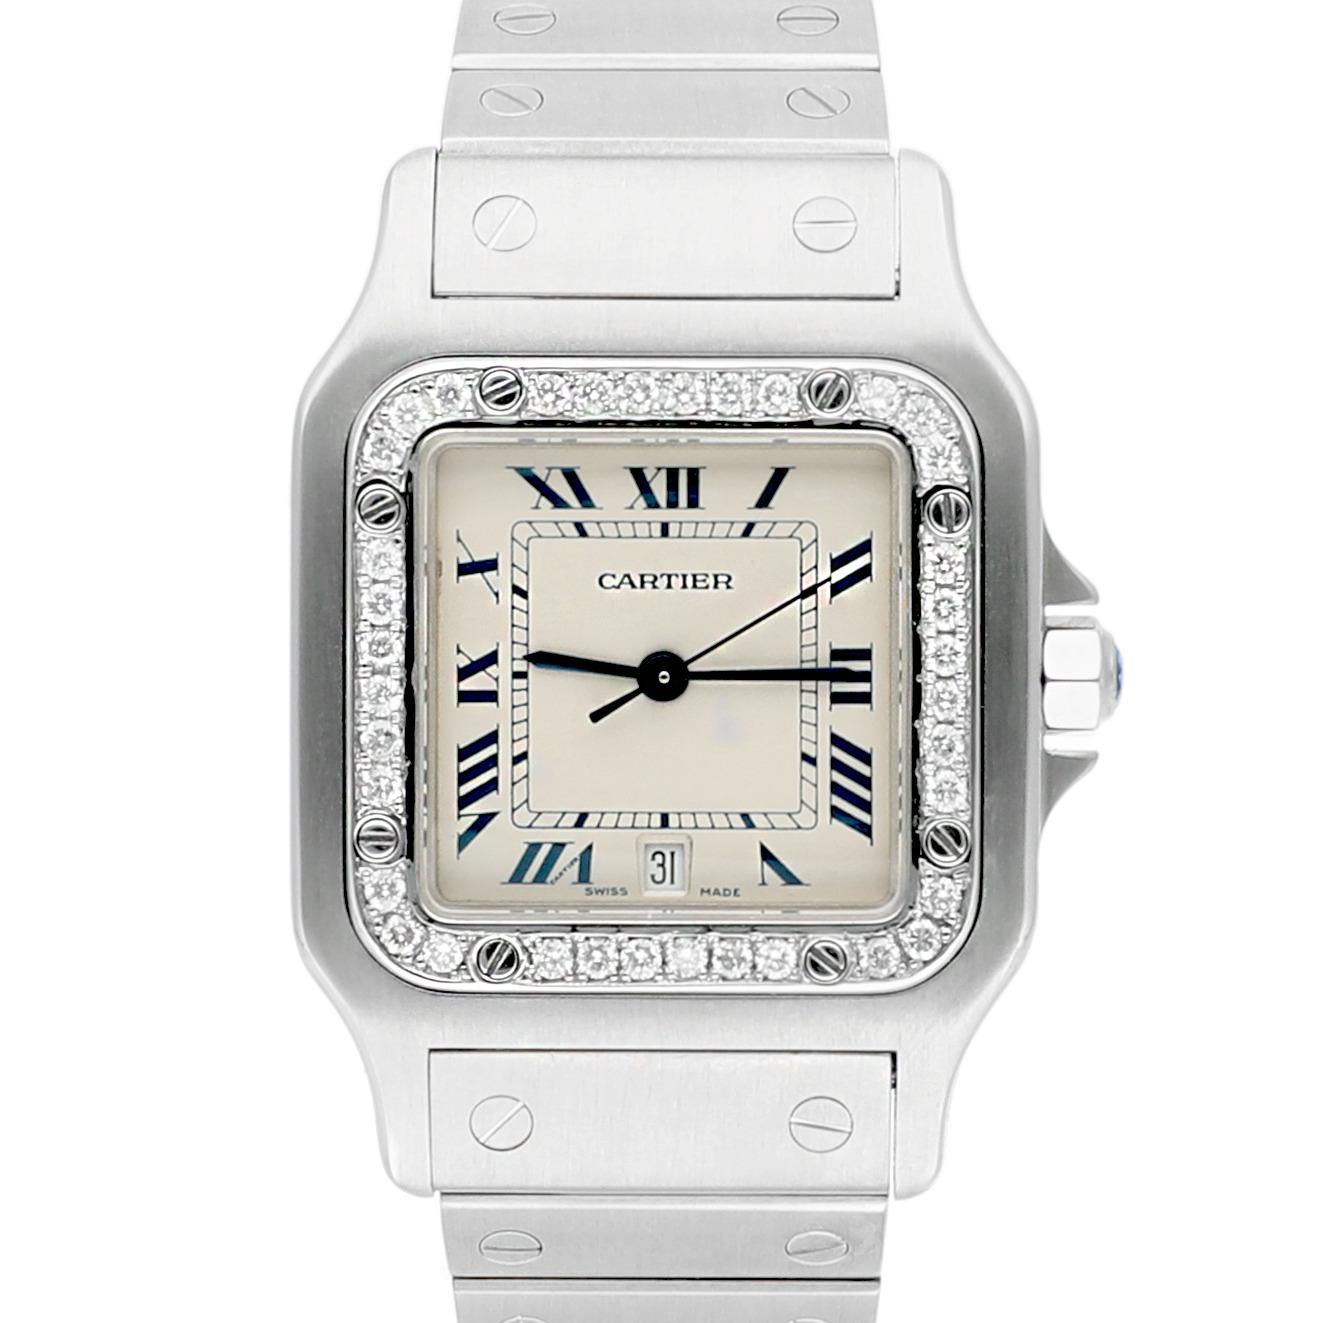 Cartier Santos Galbee 29 mm Damenuhr aus Edelstahl mit Diamant-Lünette 1564
Diese Uhr wurde professionell poliert und gewartet und befindet sich in einem ausgezeichneten Gesamtzustand. Es gibt absolut keine sichtbaren Kratzer oder Schönheitsfehler.